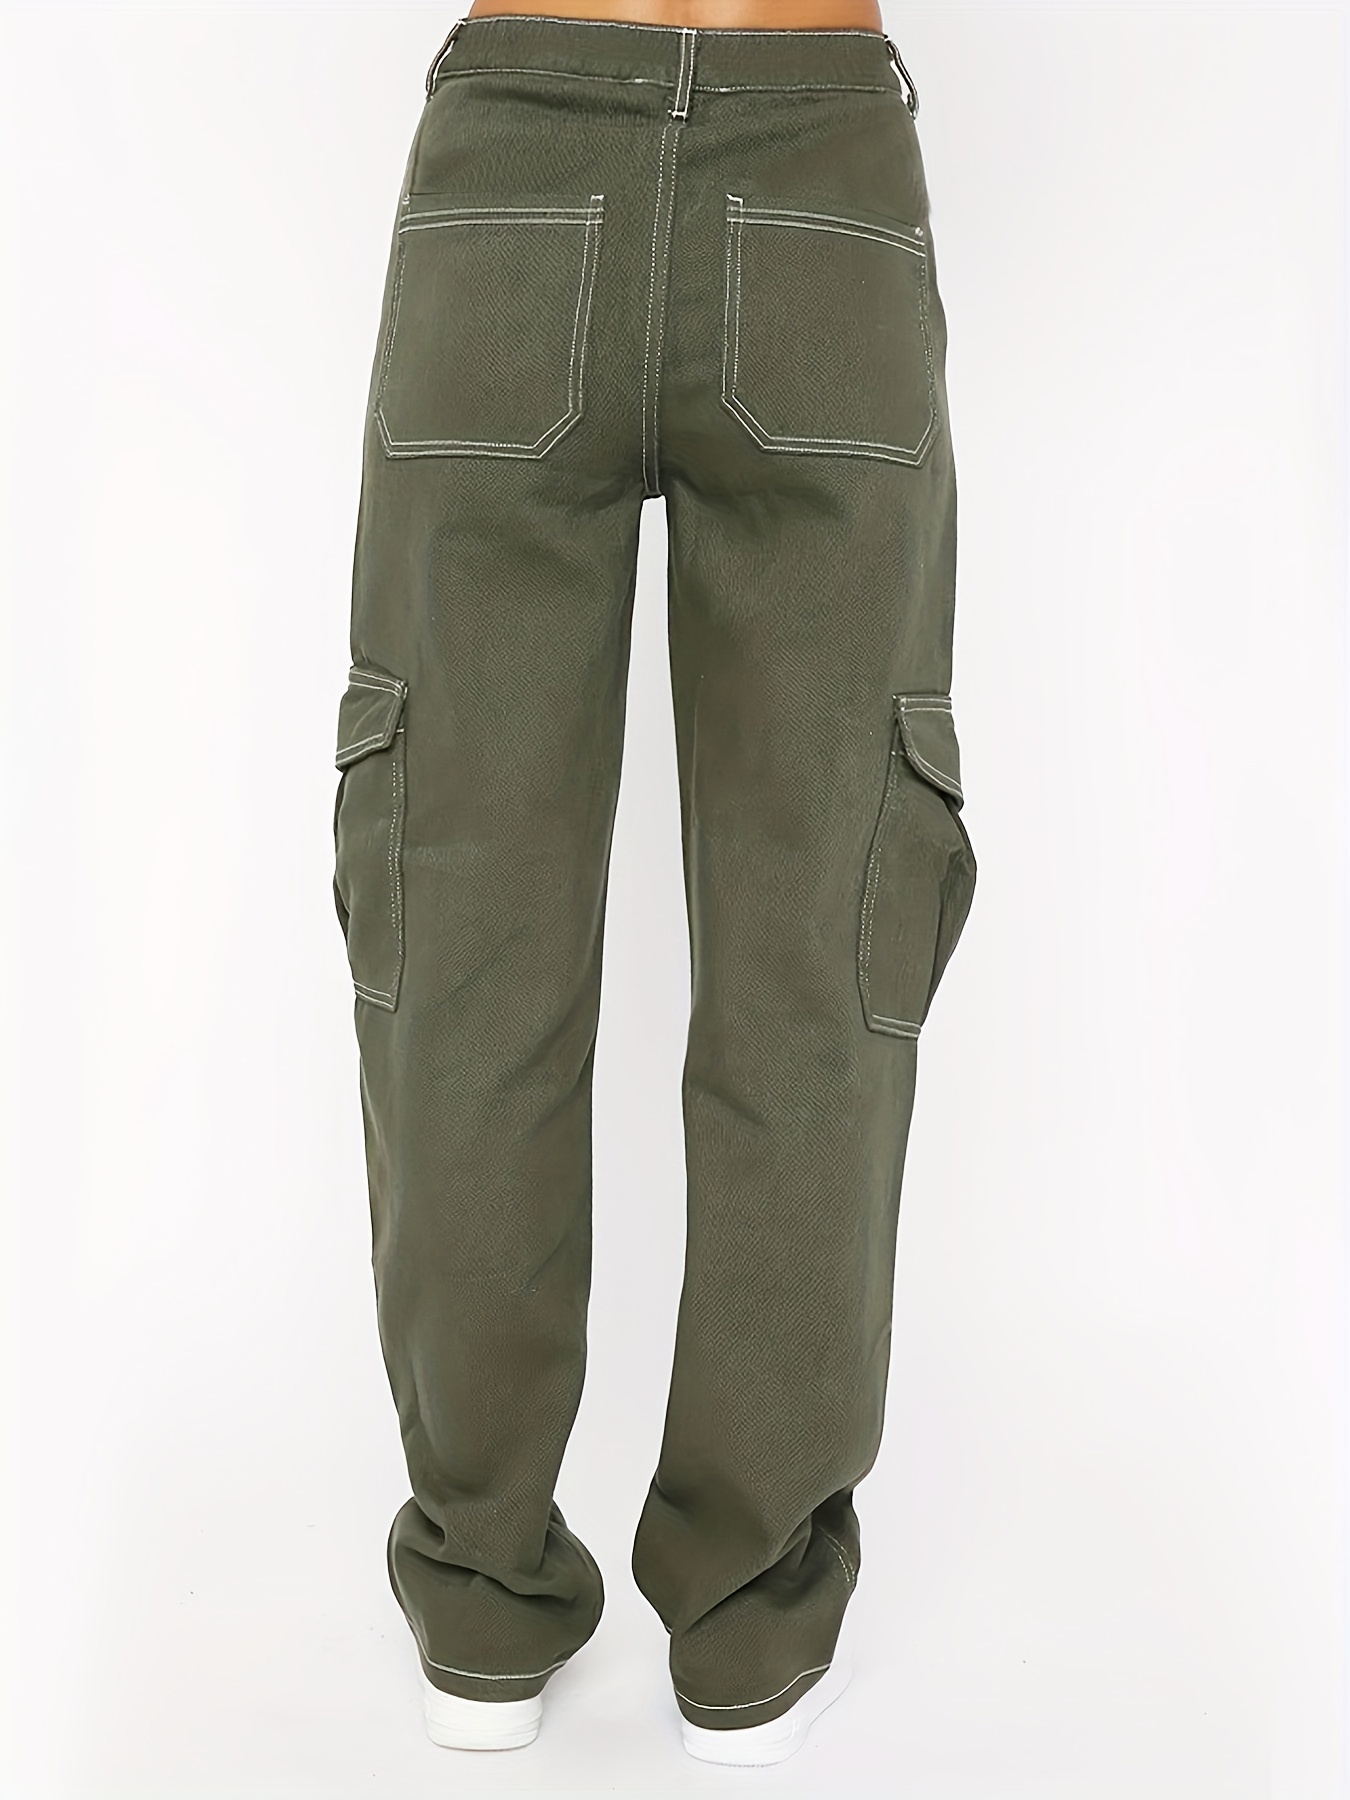 Pantalones Militares, Hombre y Mujer